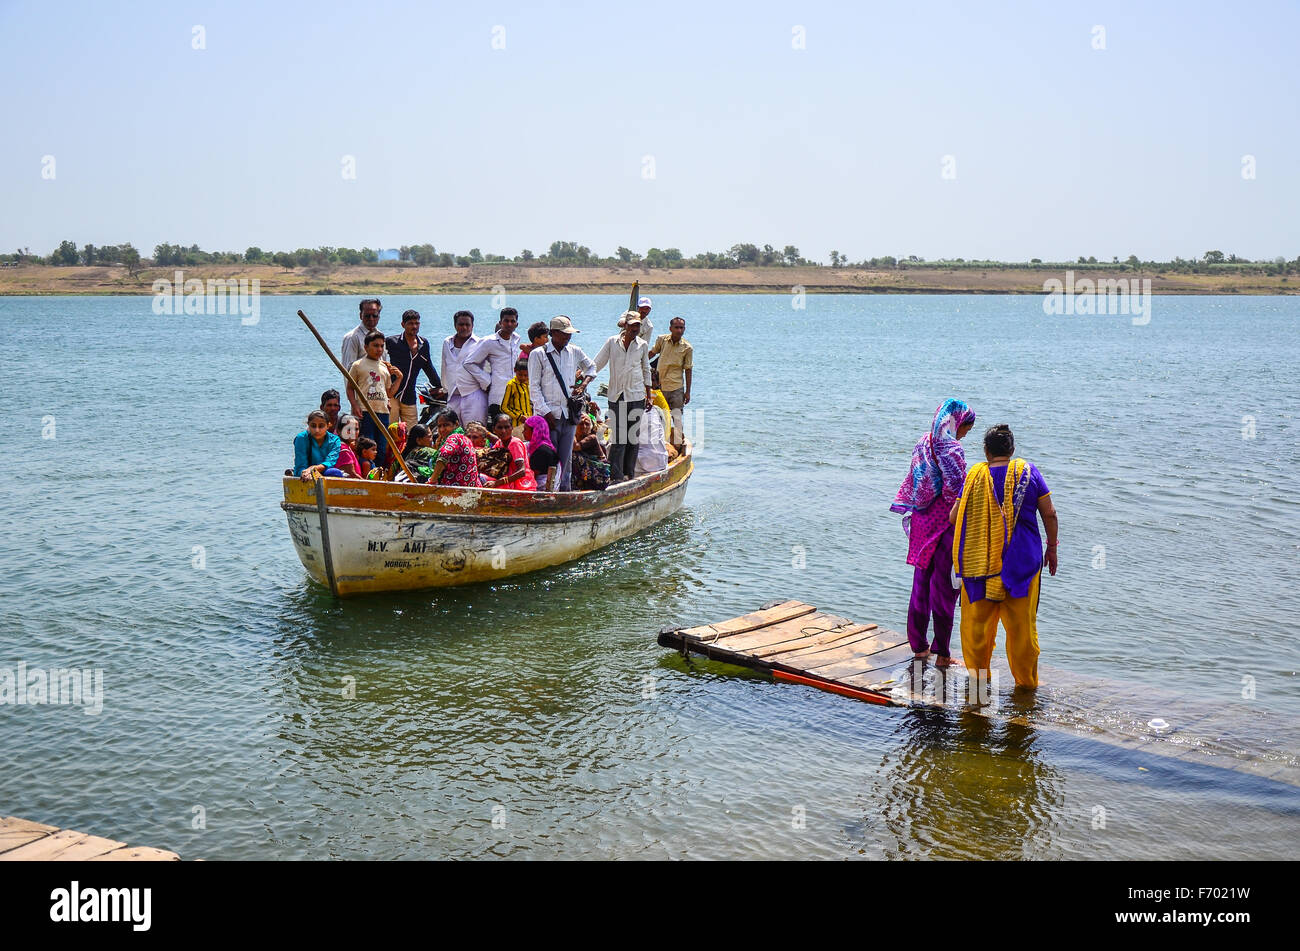 The row boat transport service on Narmada river at Nareshwar, Vadodara, Gujarat, India Stock Photo